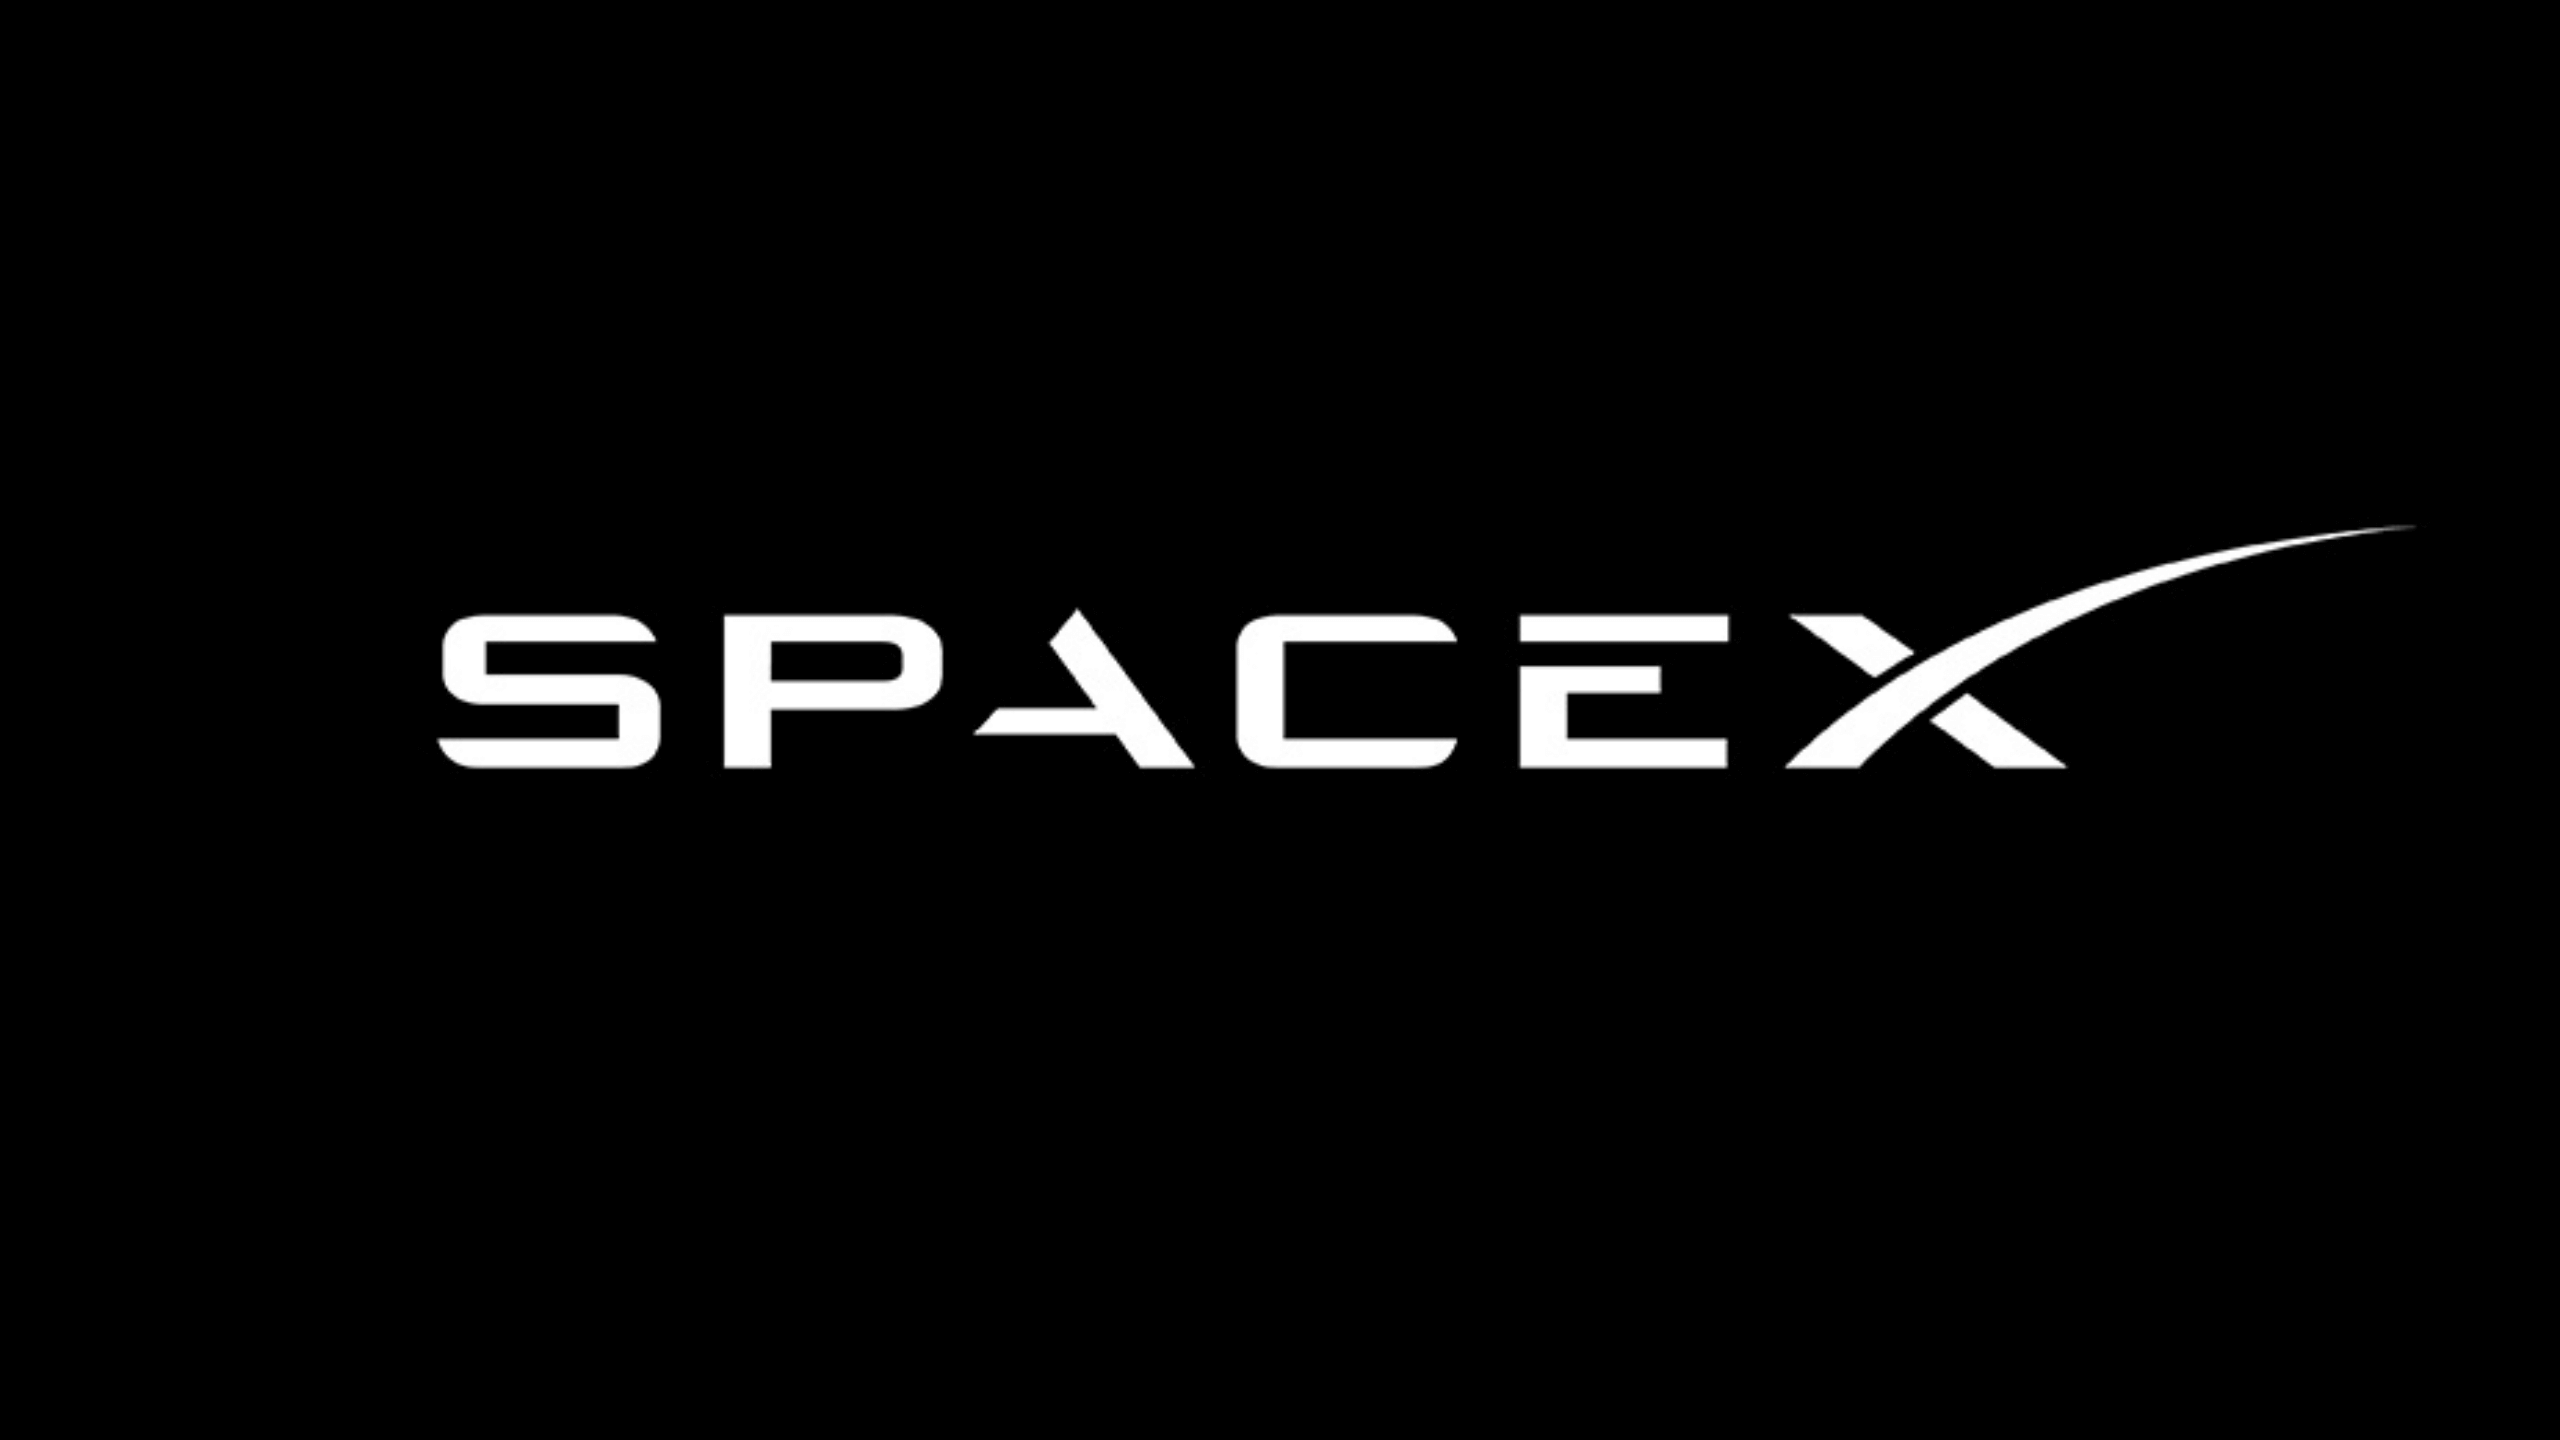 SpaceXは毎年恒例の2022年のホリデーパーティーを開催し、TikTokでヒットしました